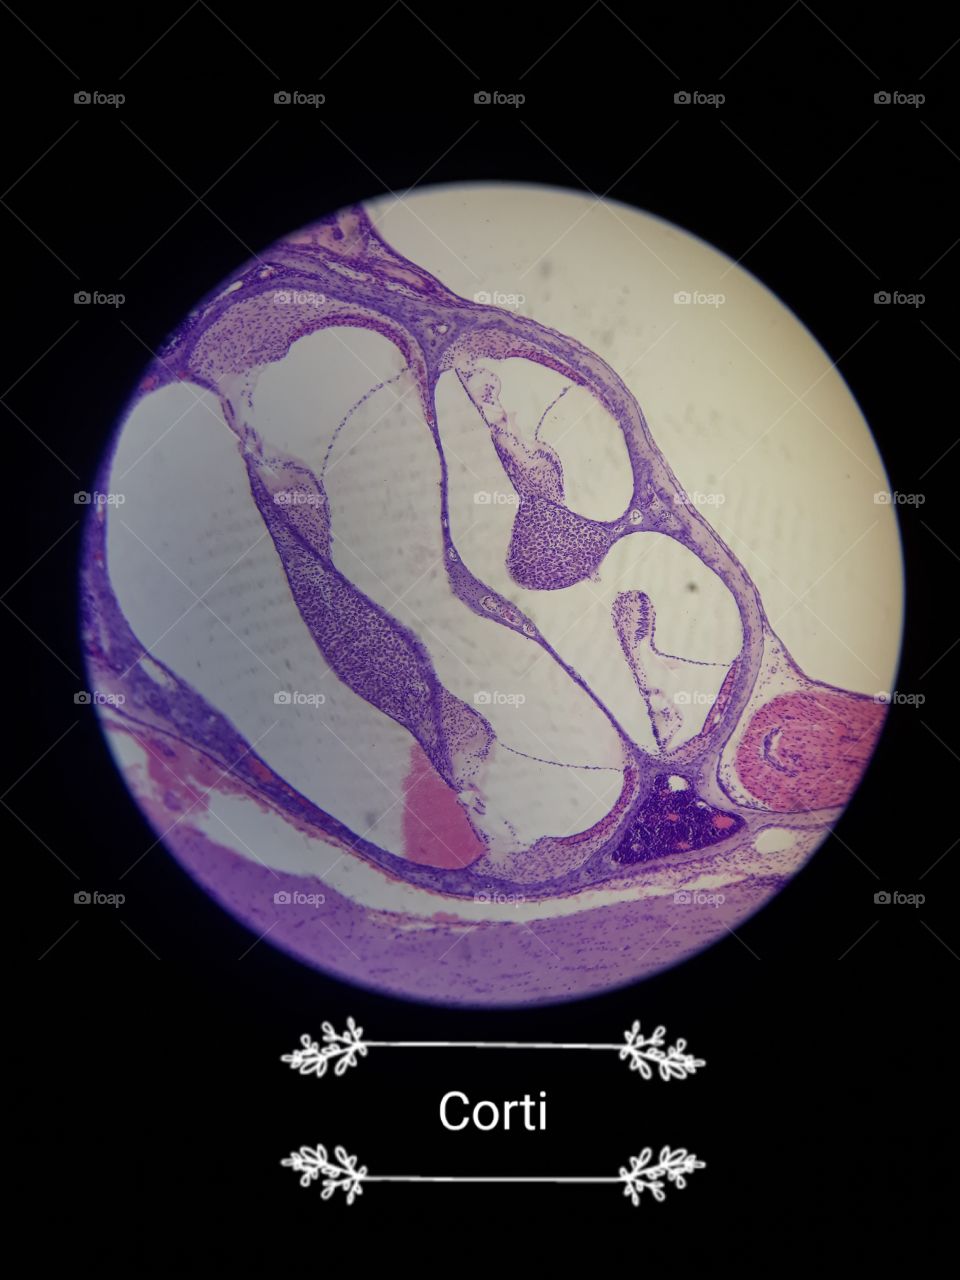 corti picture under microscope